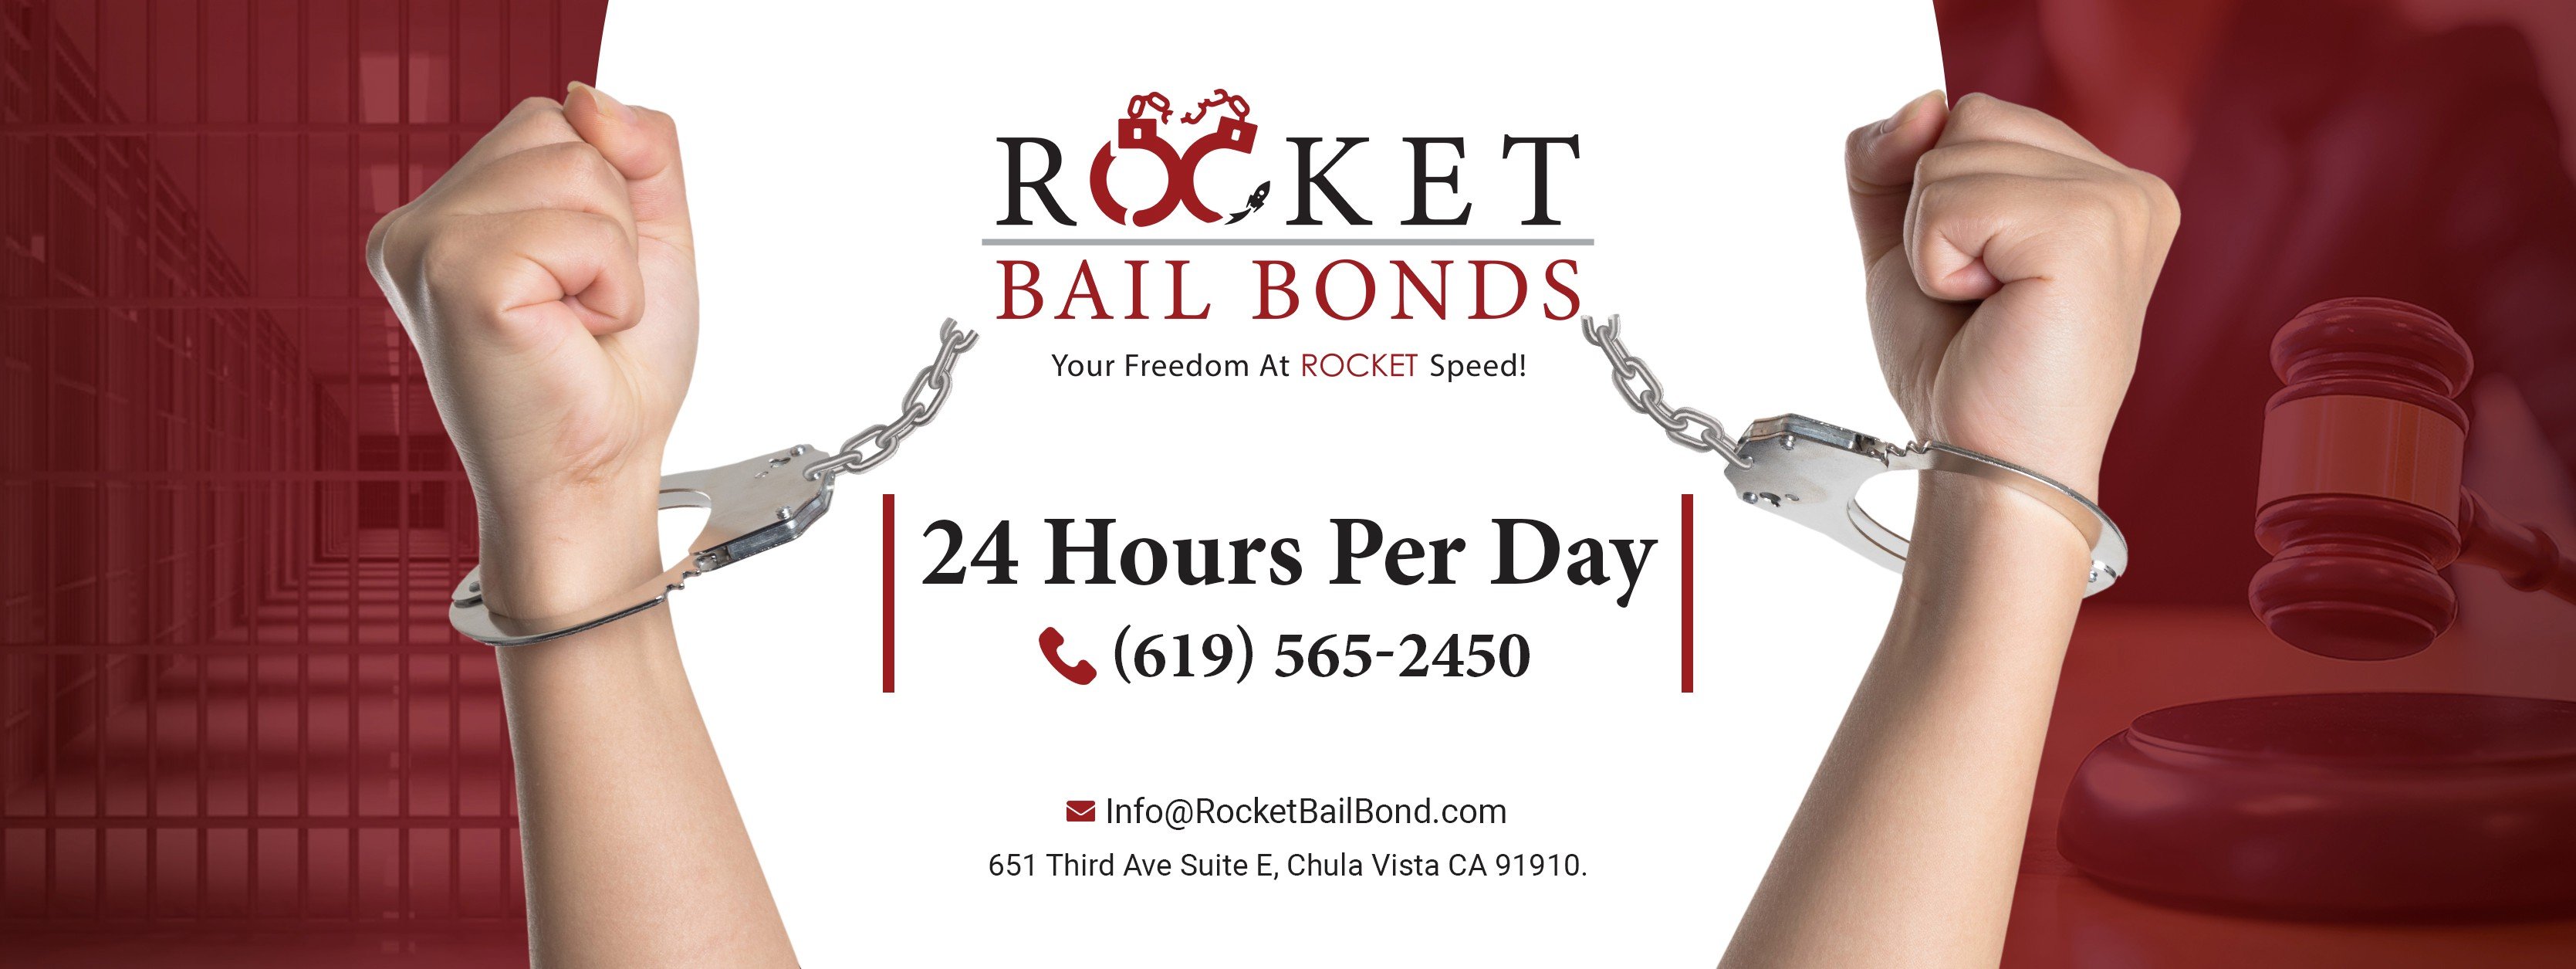 Rocket Bail Bonds cover